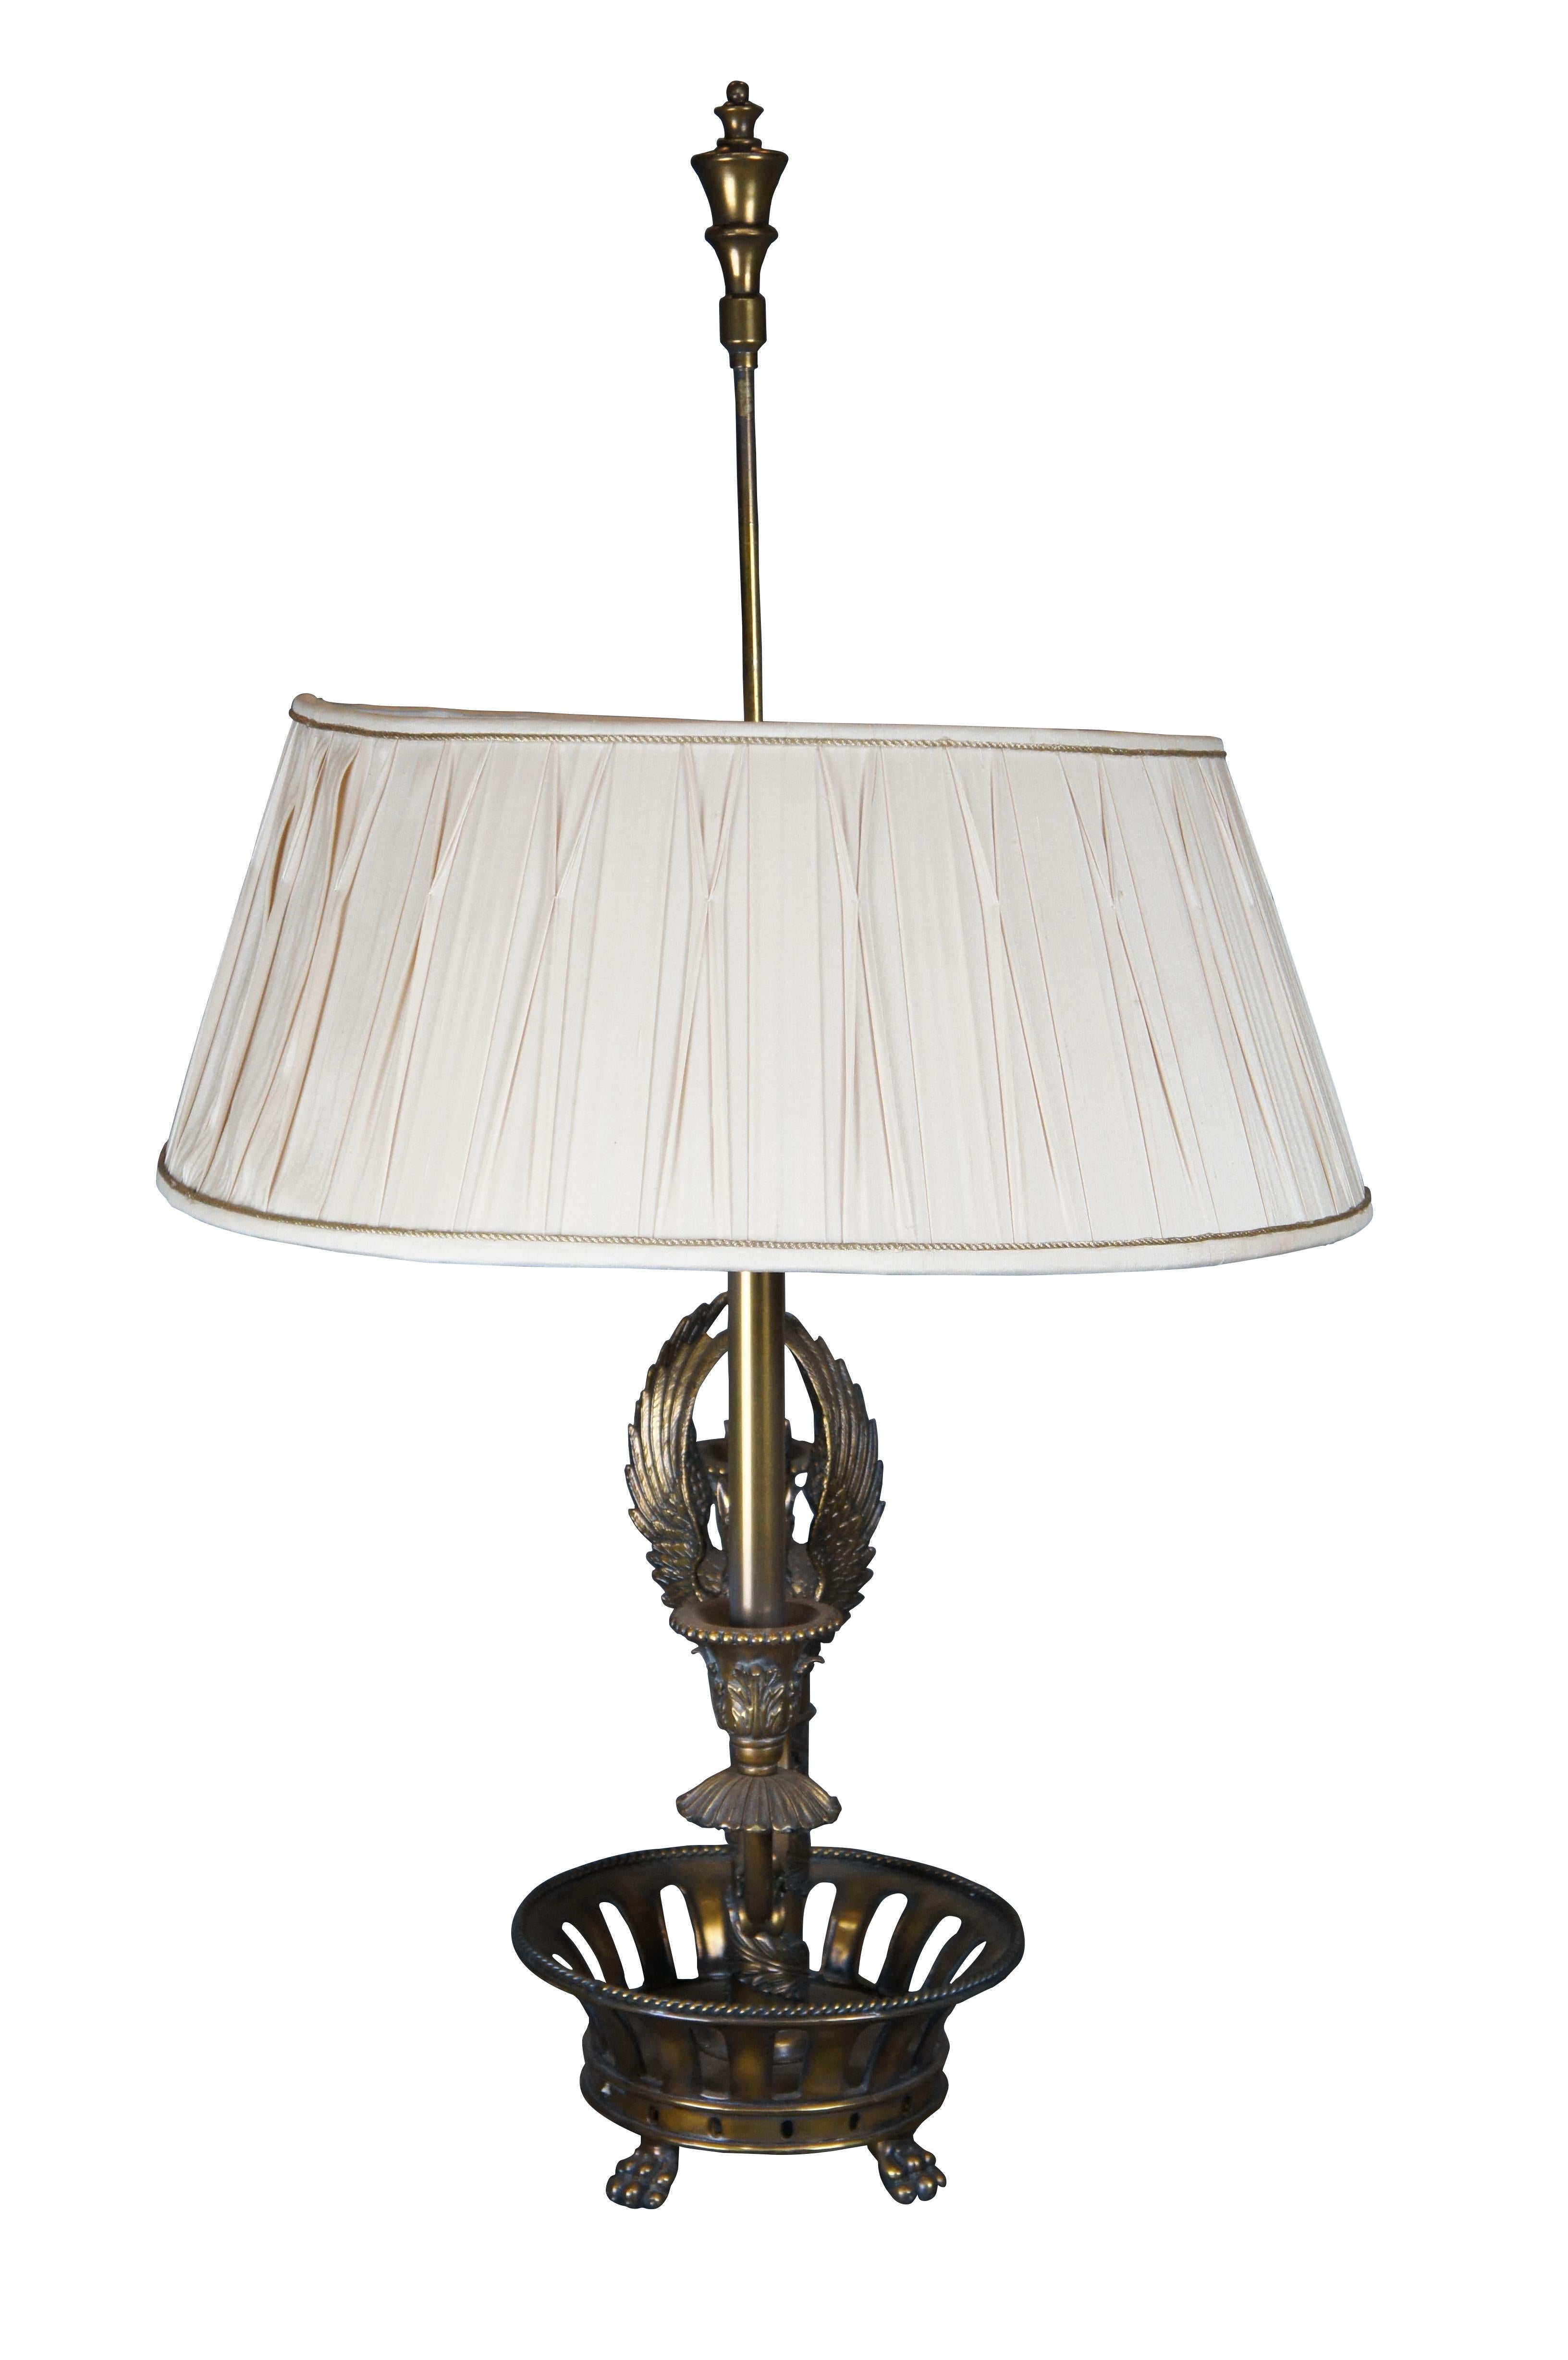 Monumental lámpara Bouillote / Budoir Maitland Smith de estilo Imperio de finales del siglo XX. Fabricado en latón con una base perforada y con patas sobre una columna envuelta en acanto que conduce a un centro figurado de candelabro con forma de